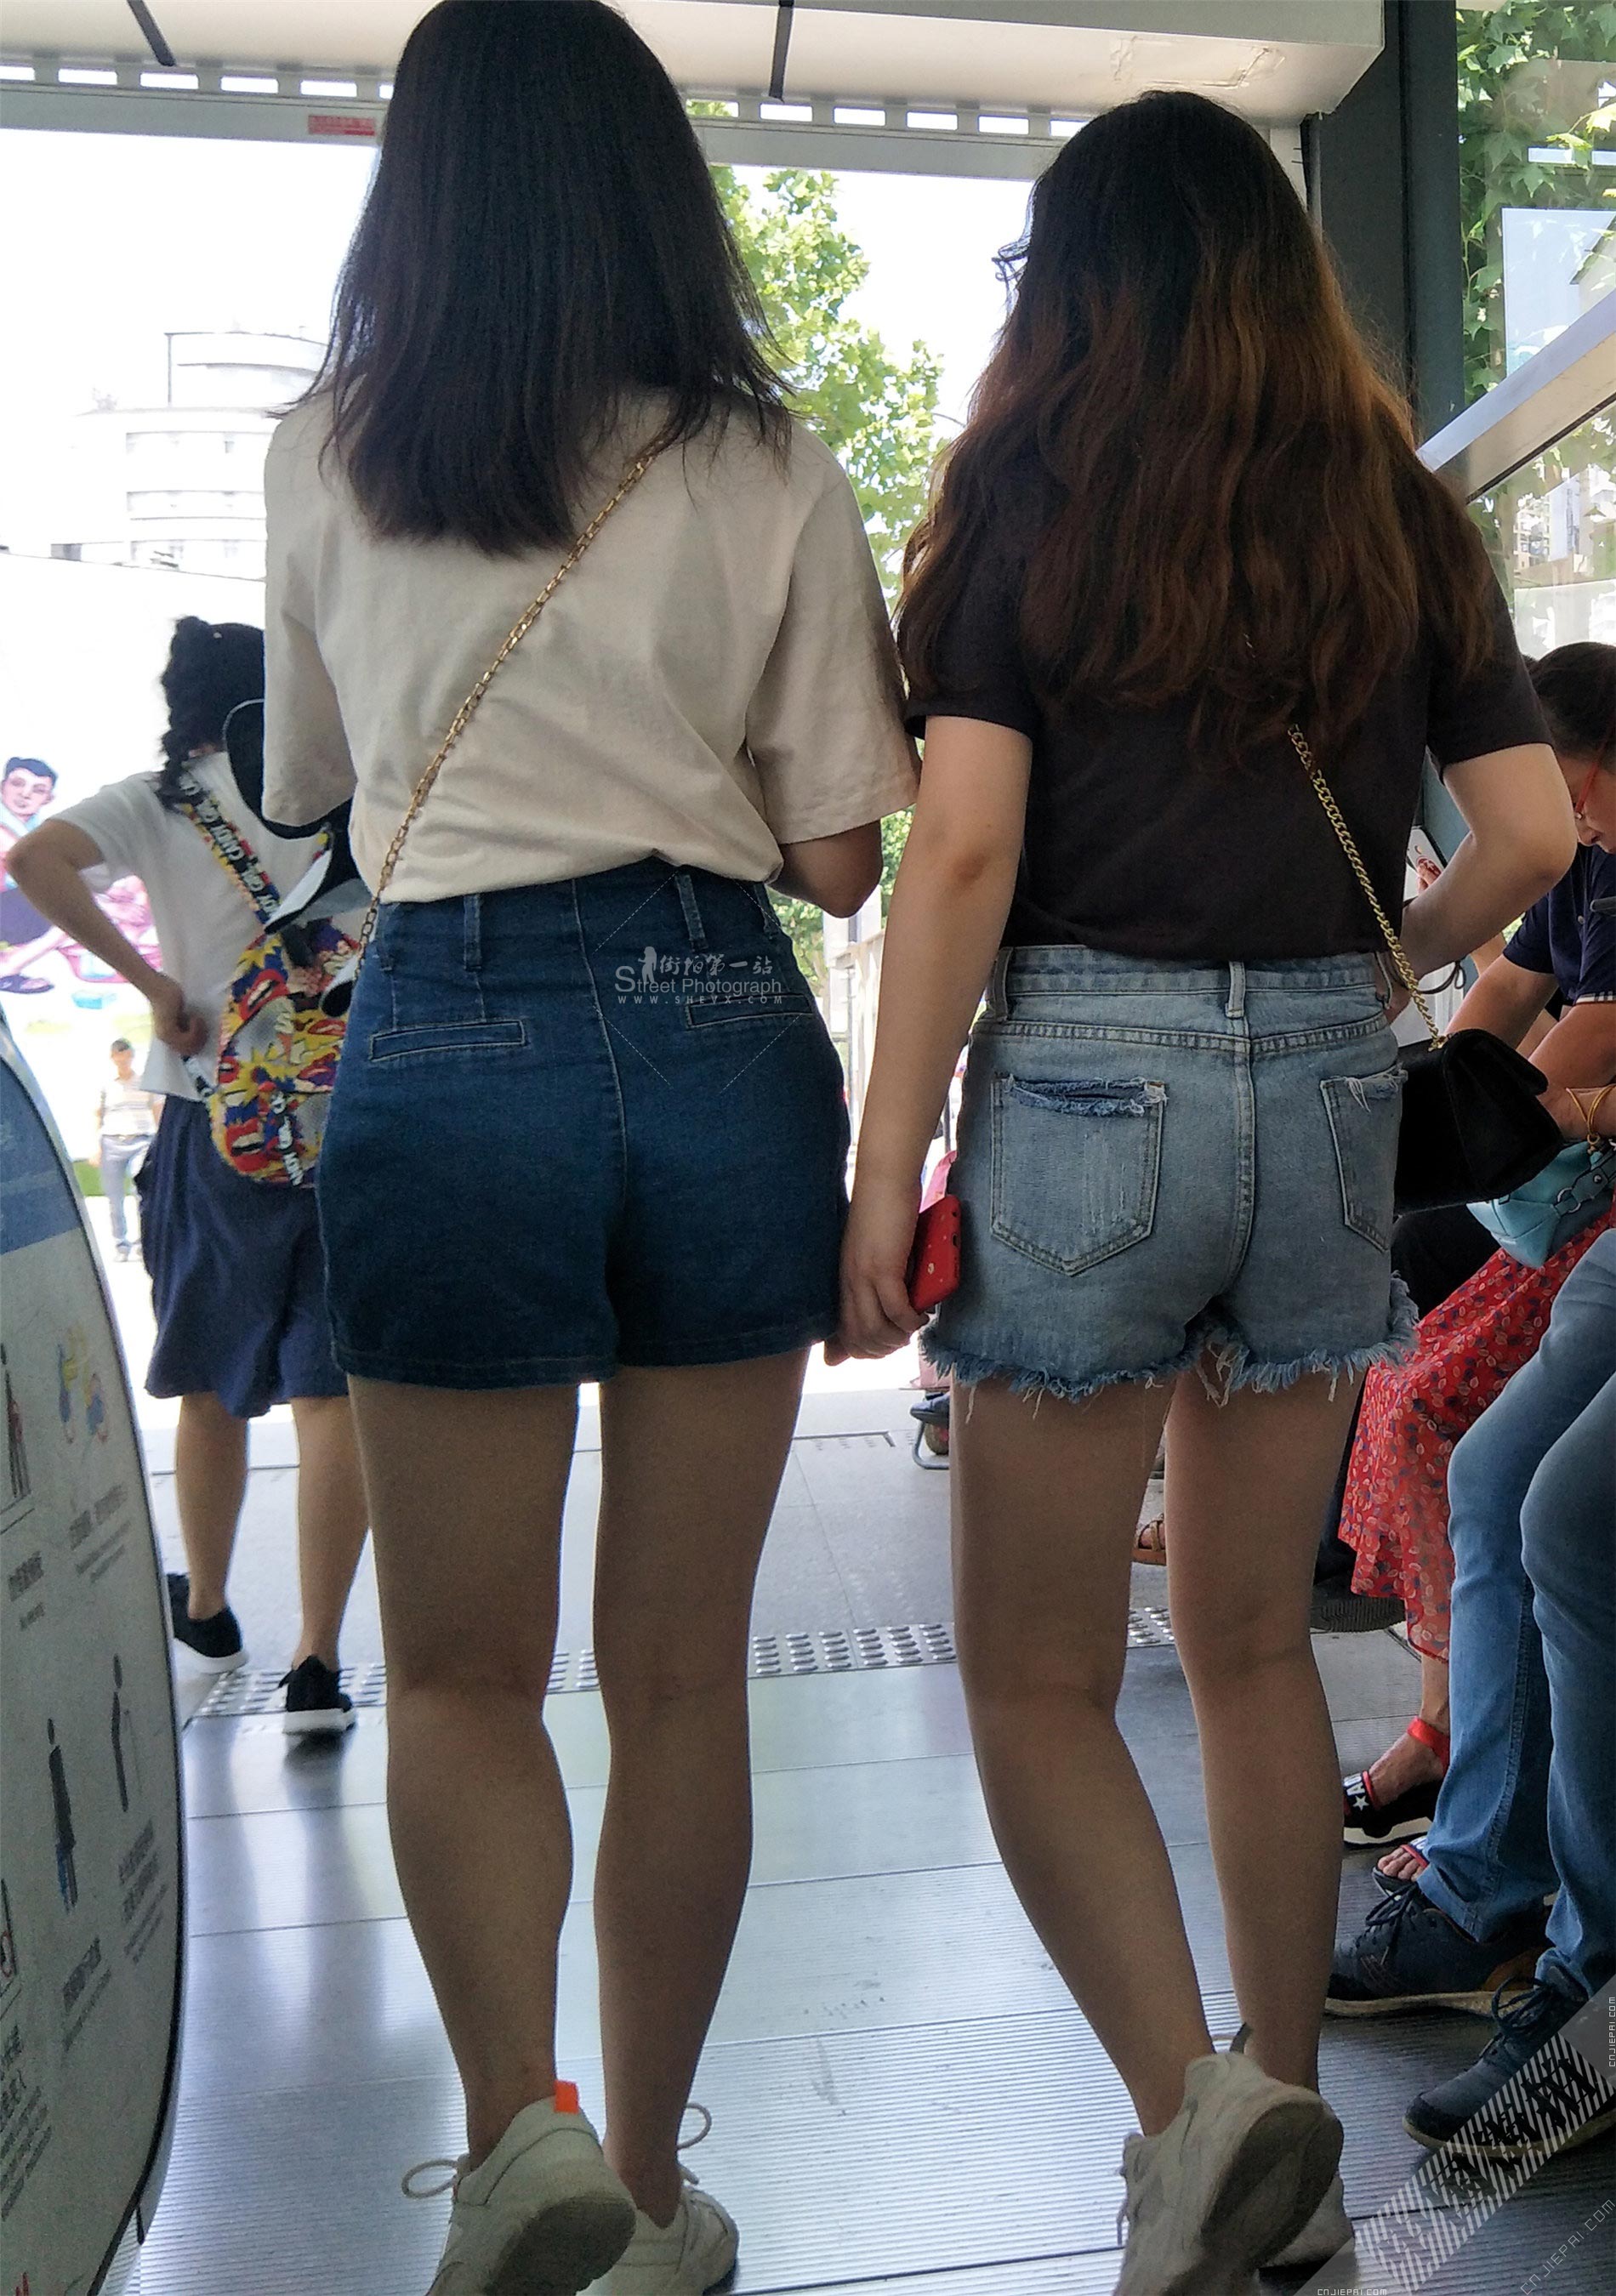 跟拍出地铁站的两位热裤美女 图1